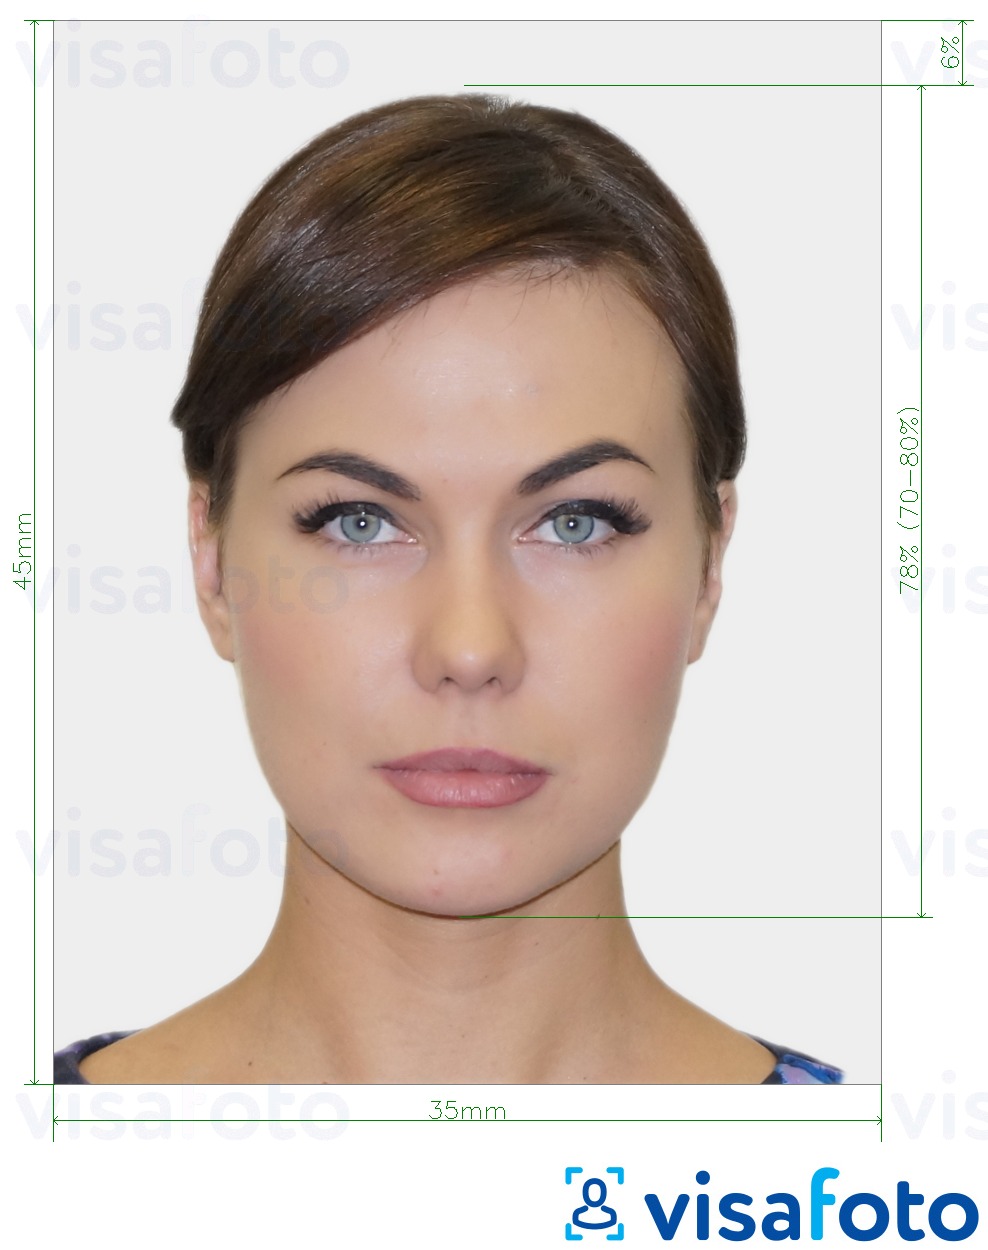 Exemplo de foto para Foto biométrica do passaporte com especificação exata de dimensão